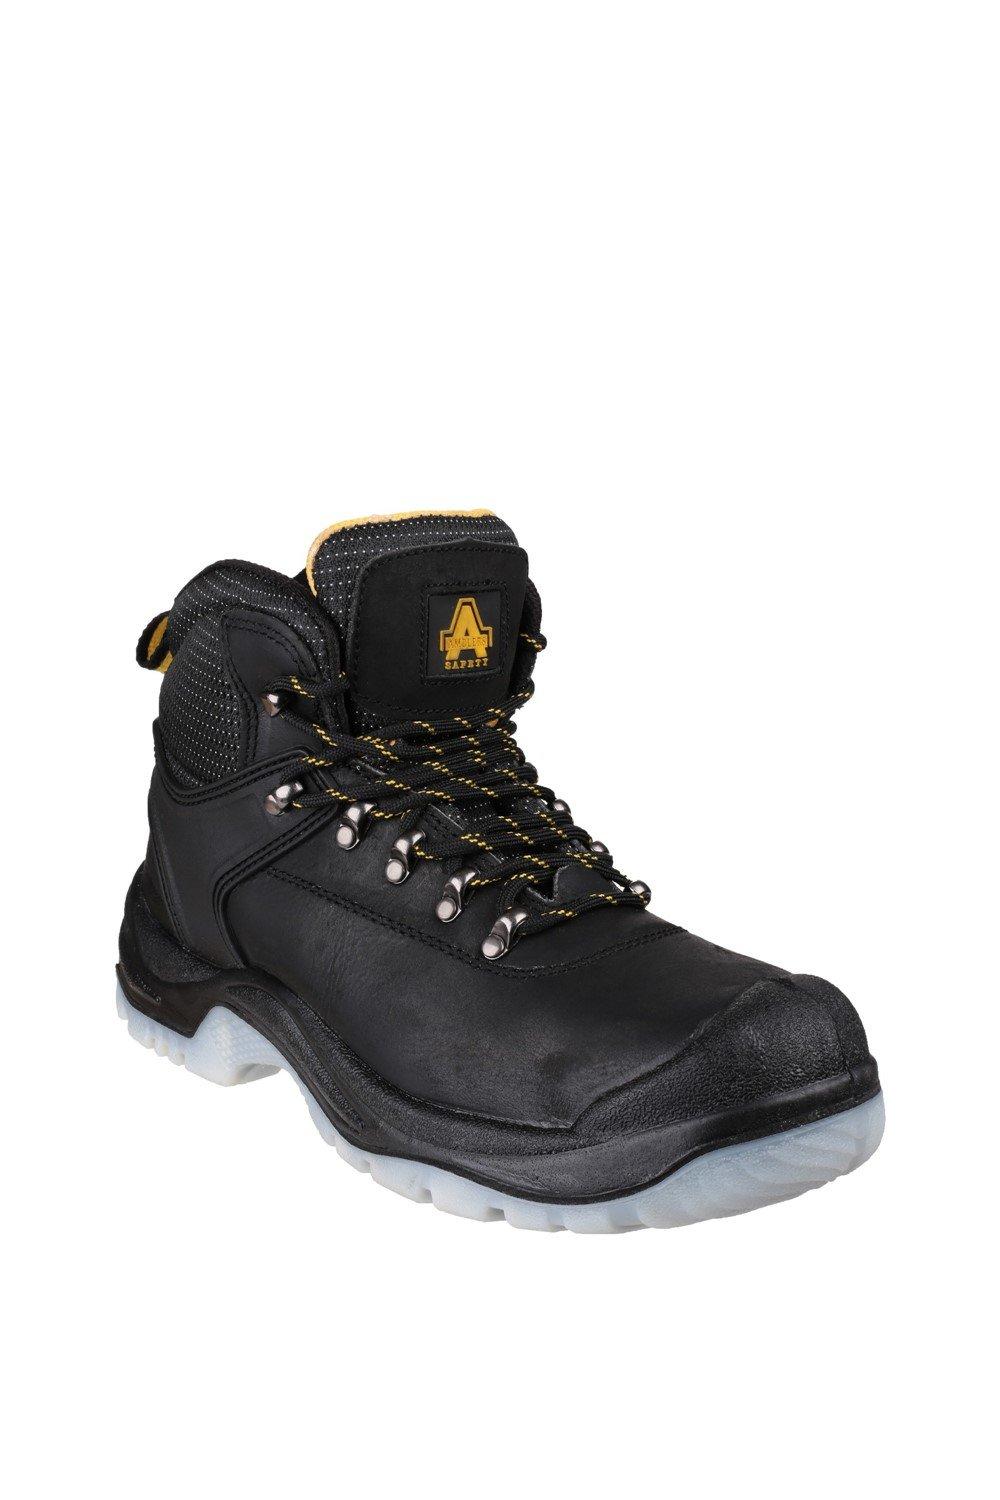 Защитные ботинки 'FS199' Amblers Safety, черный